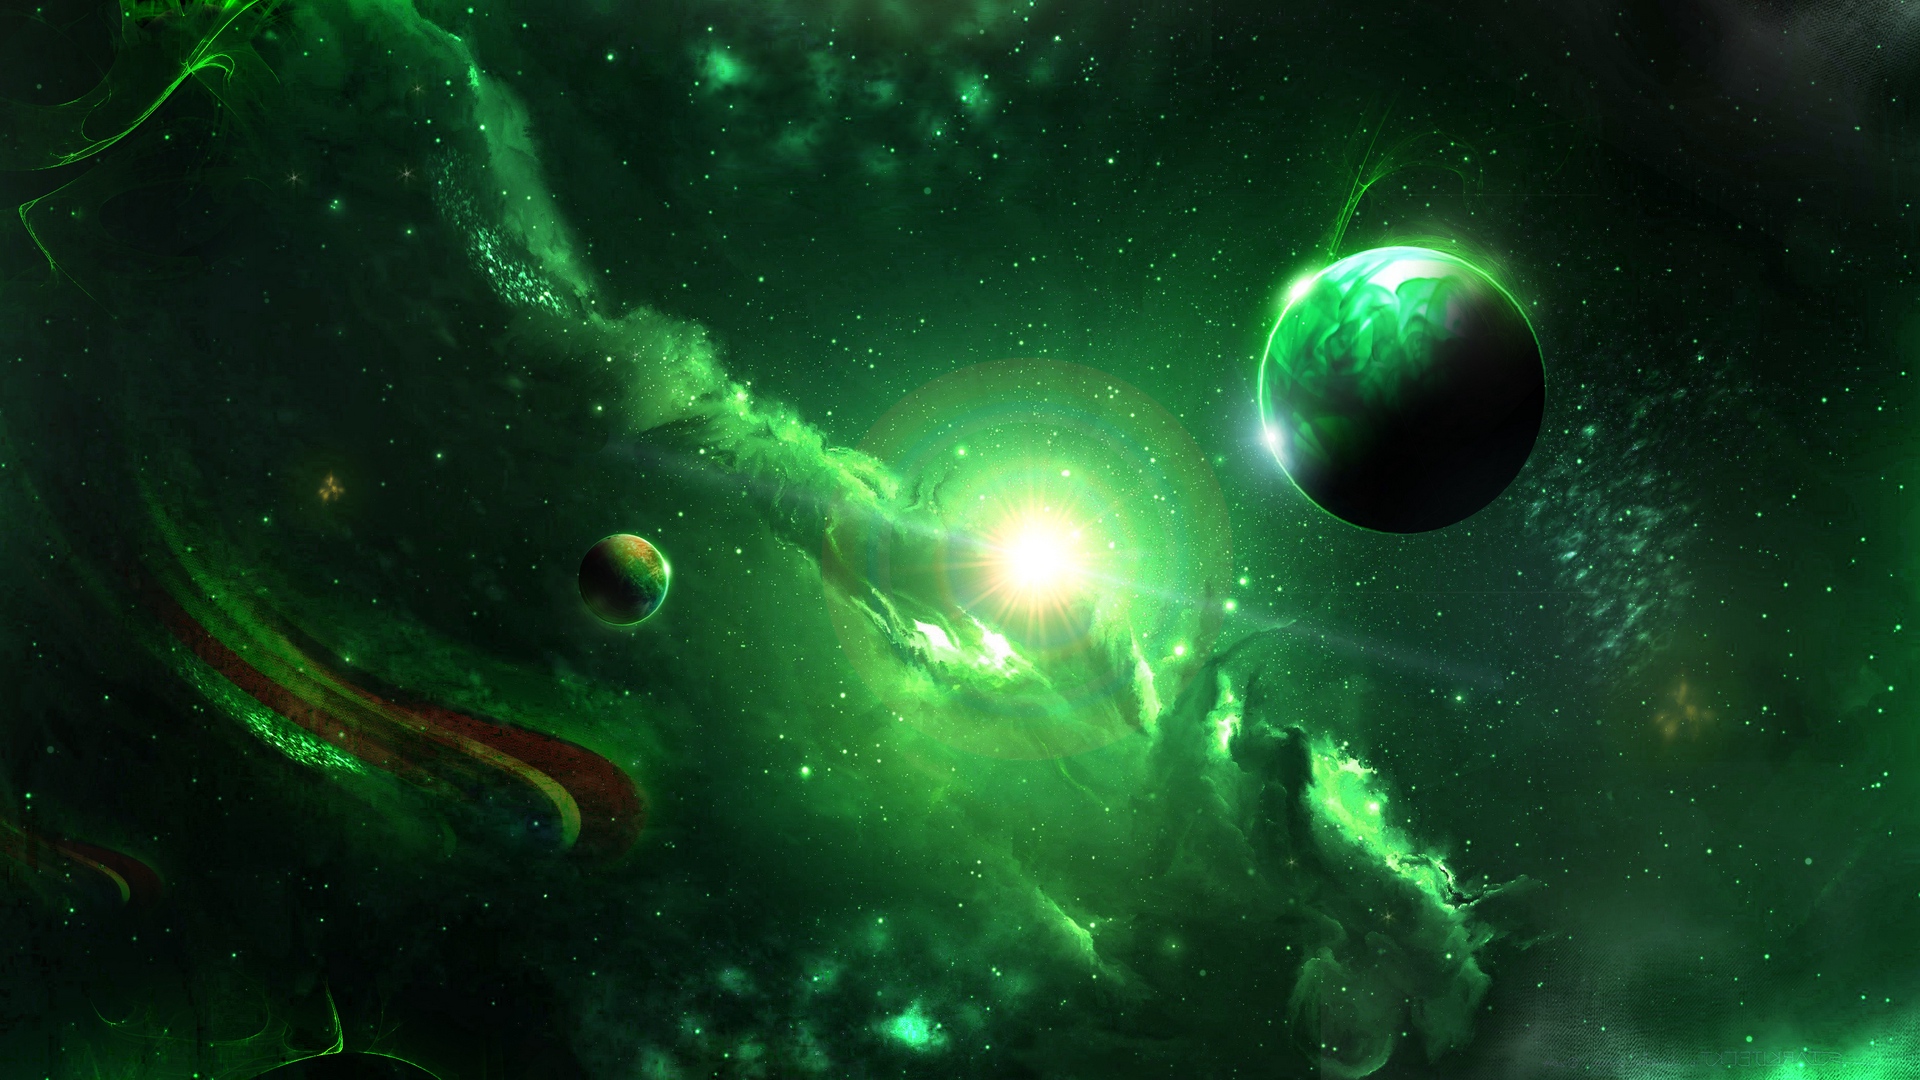 universum wallpaper,grün,natur,weltraum,astronomisches objekt,nebel